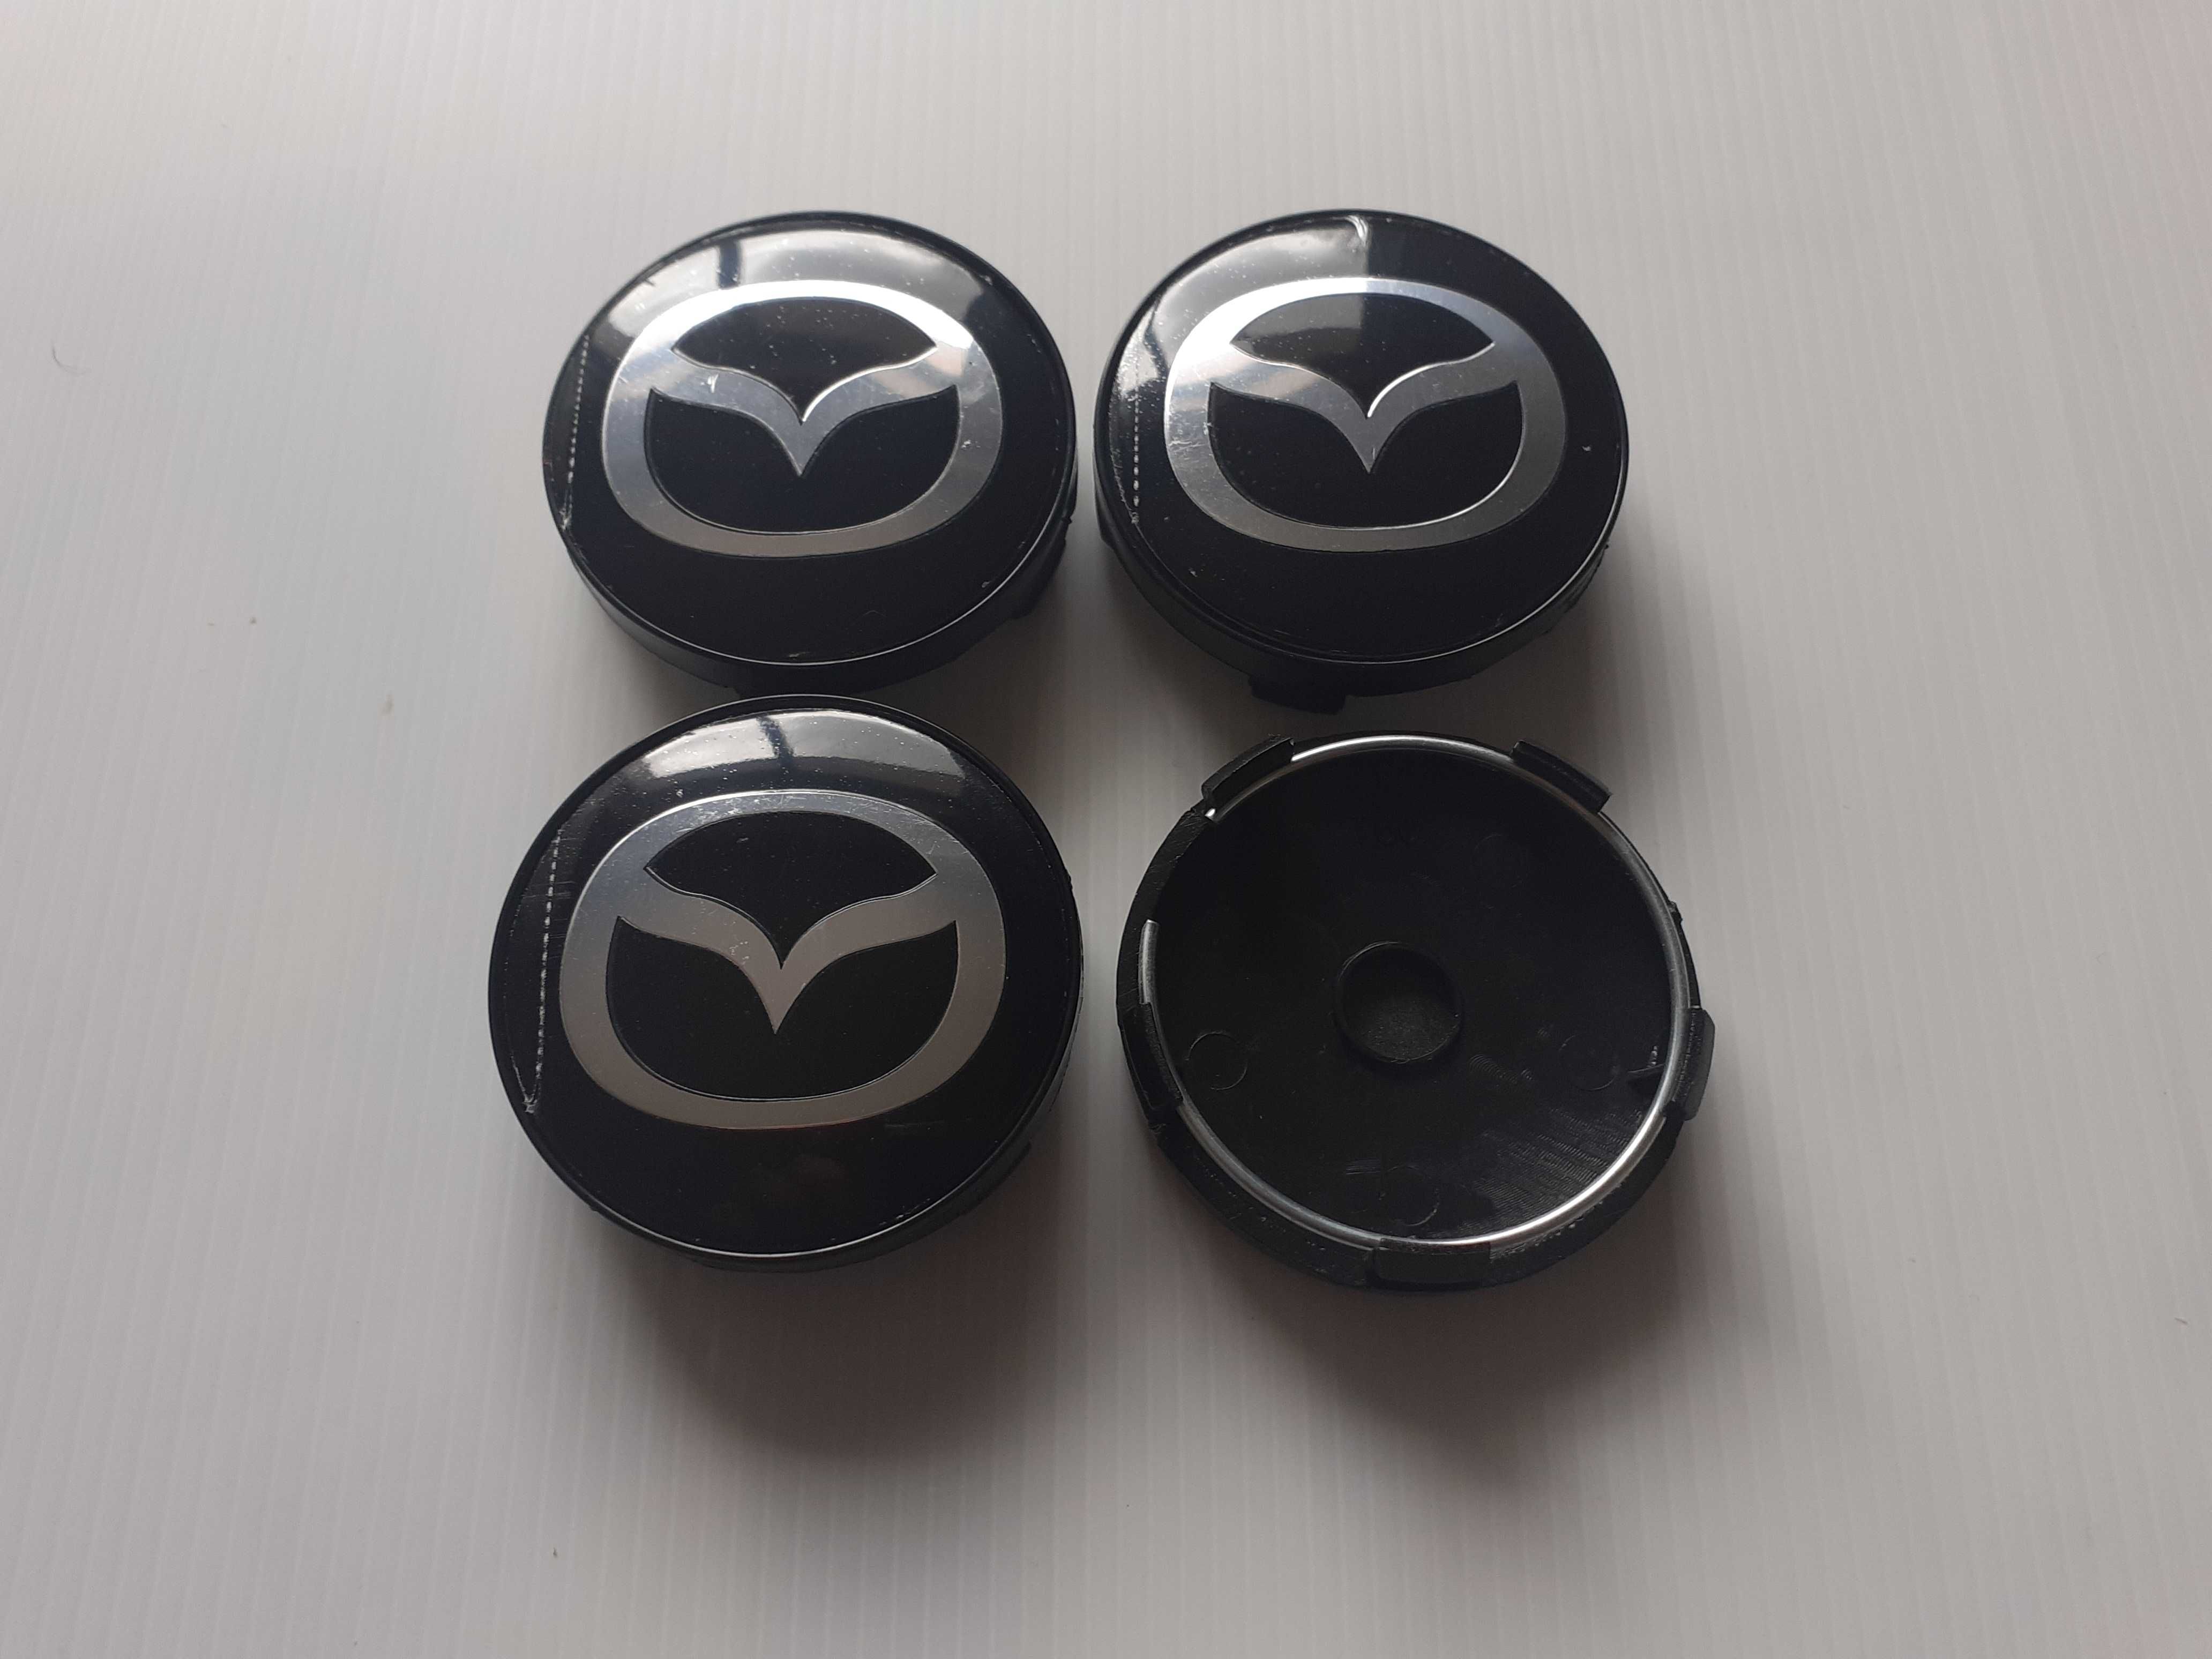 Centros/tampas de jante completos Mazda com 52, 56, 60, 65 e 68 mm